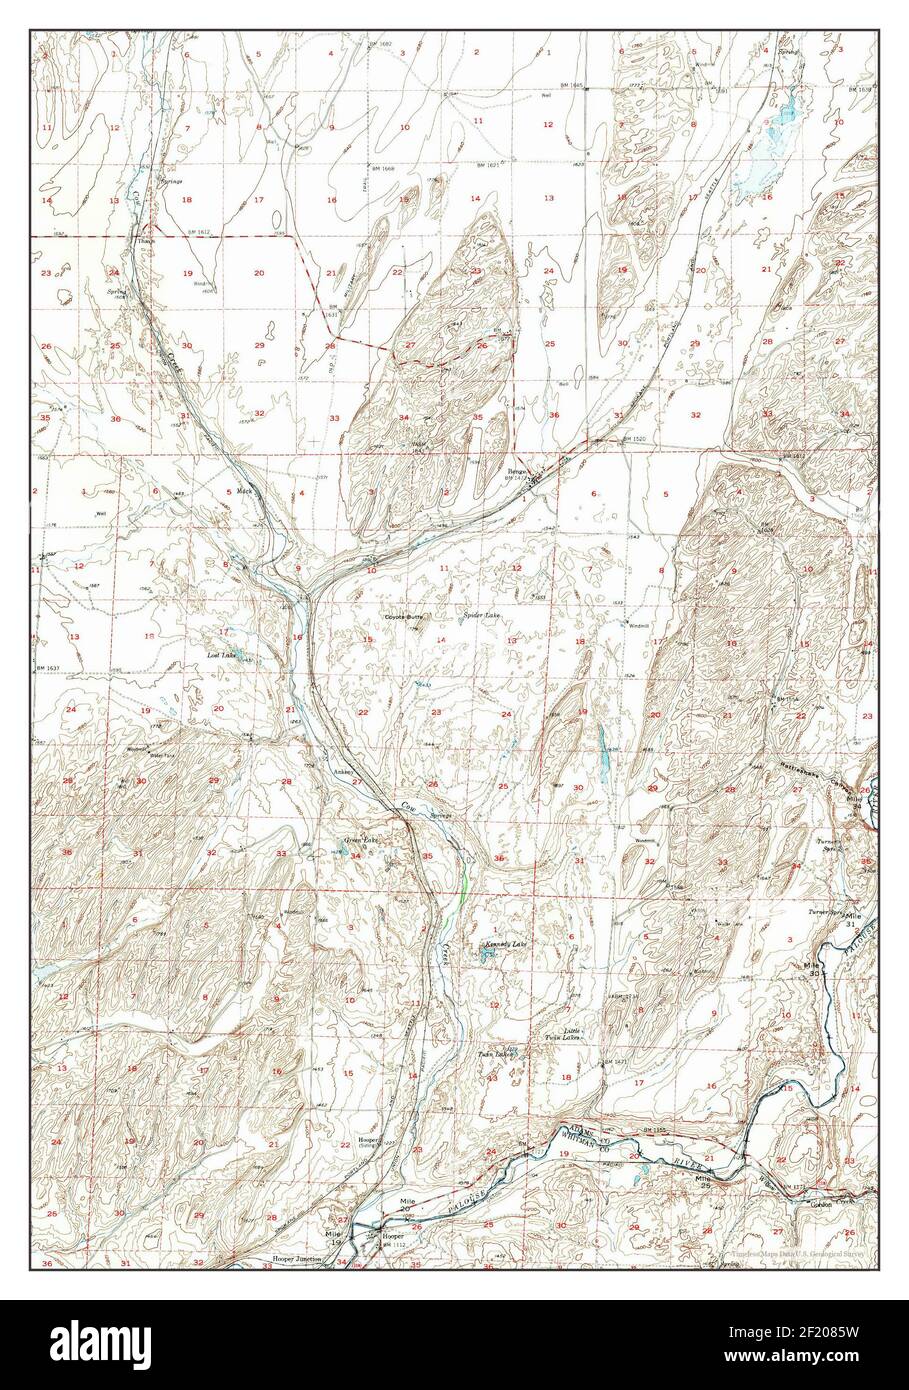 Benge, Washington, map 1950, 1:62500, United States of America by Timeless Maps, data U.S. Geological Survey Stock Photo